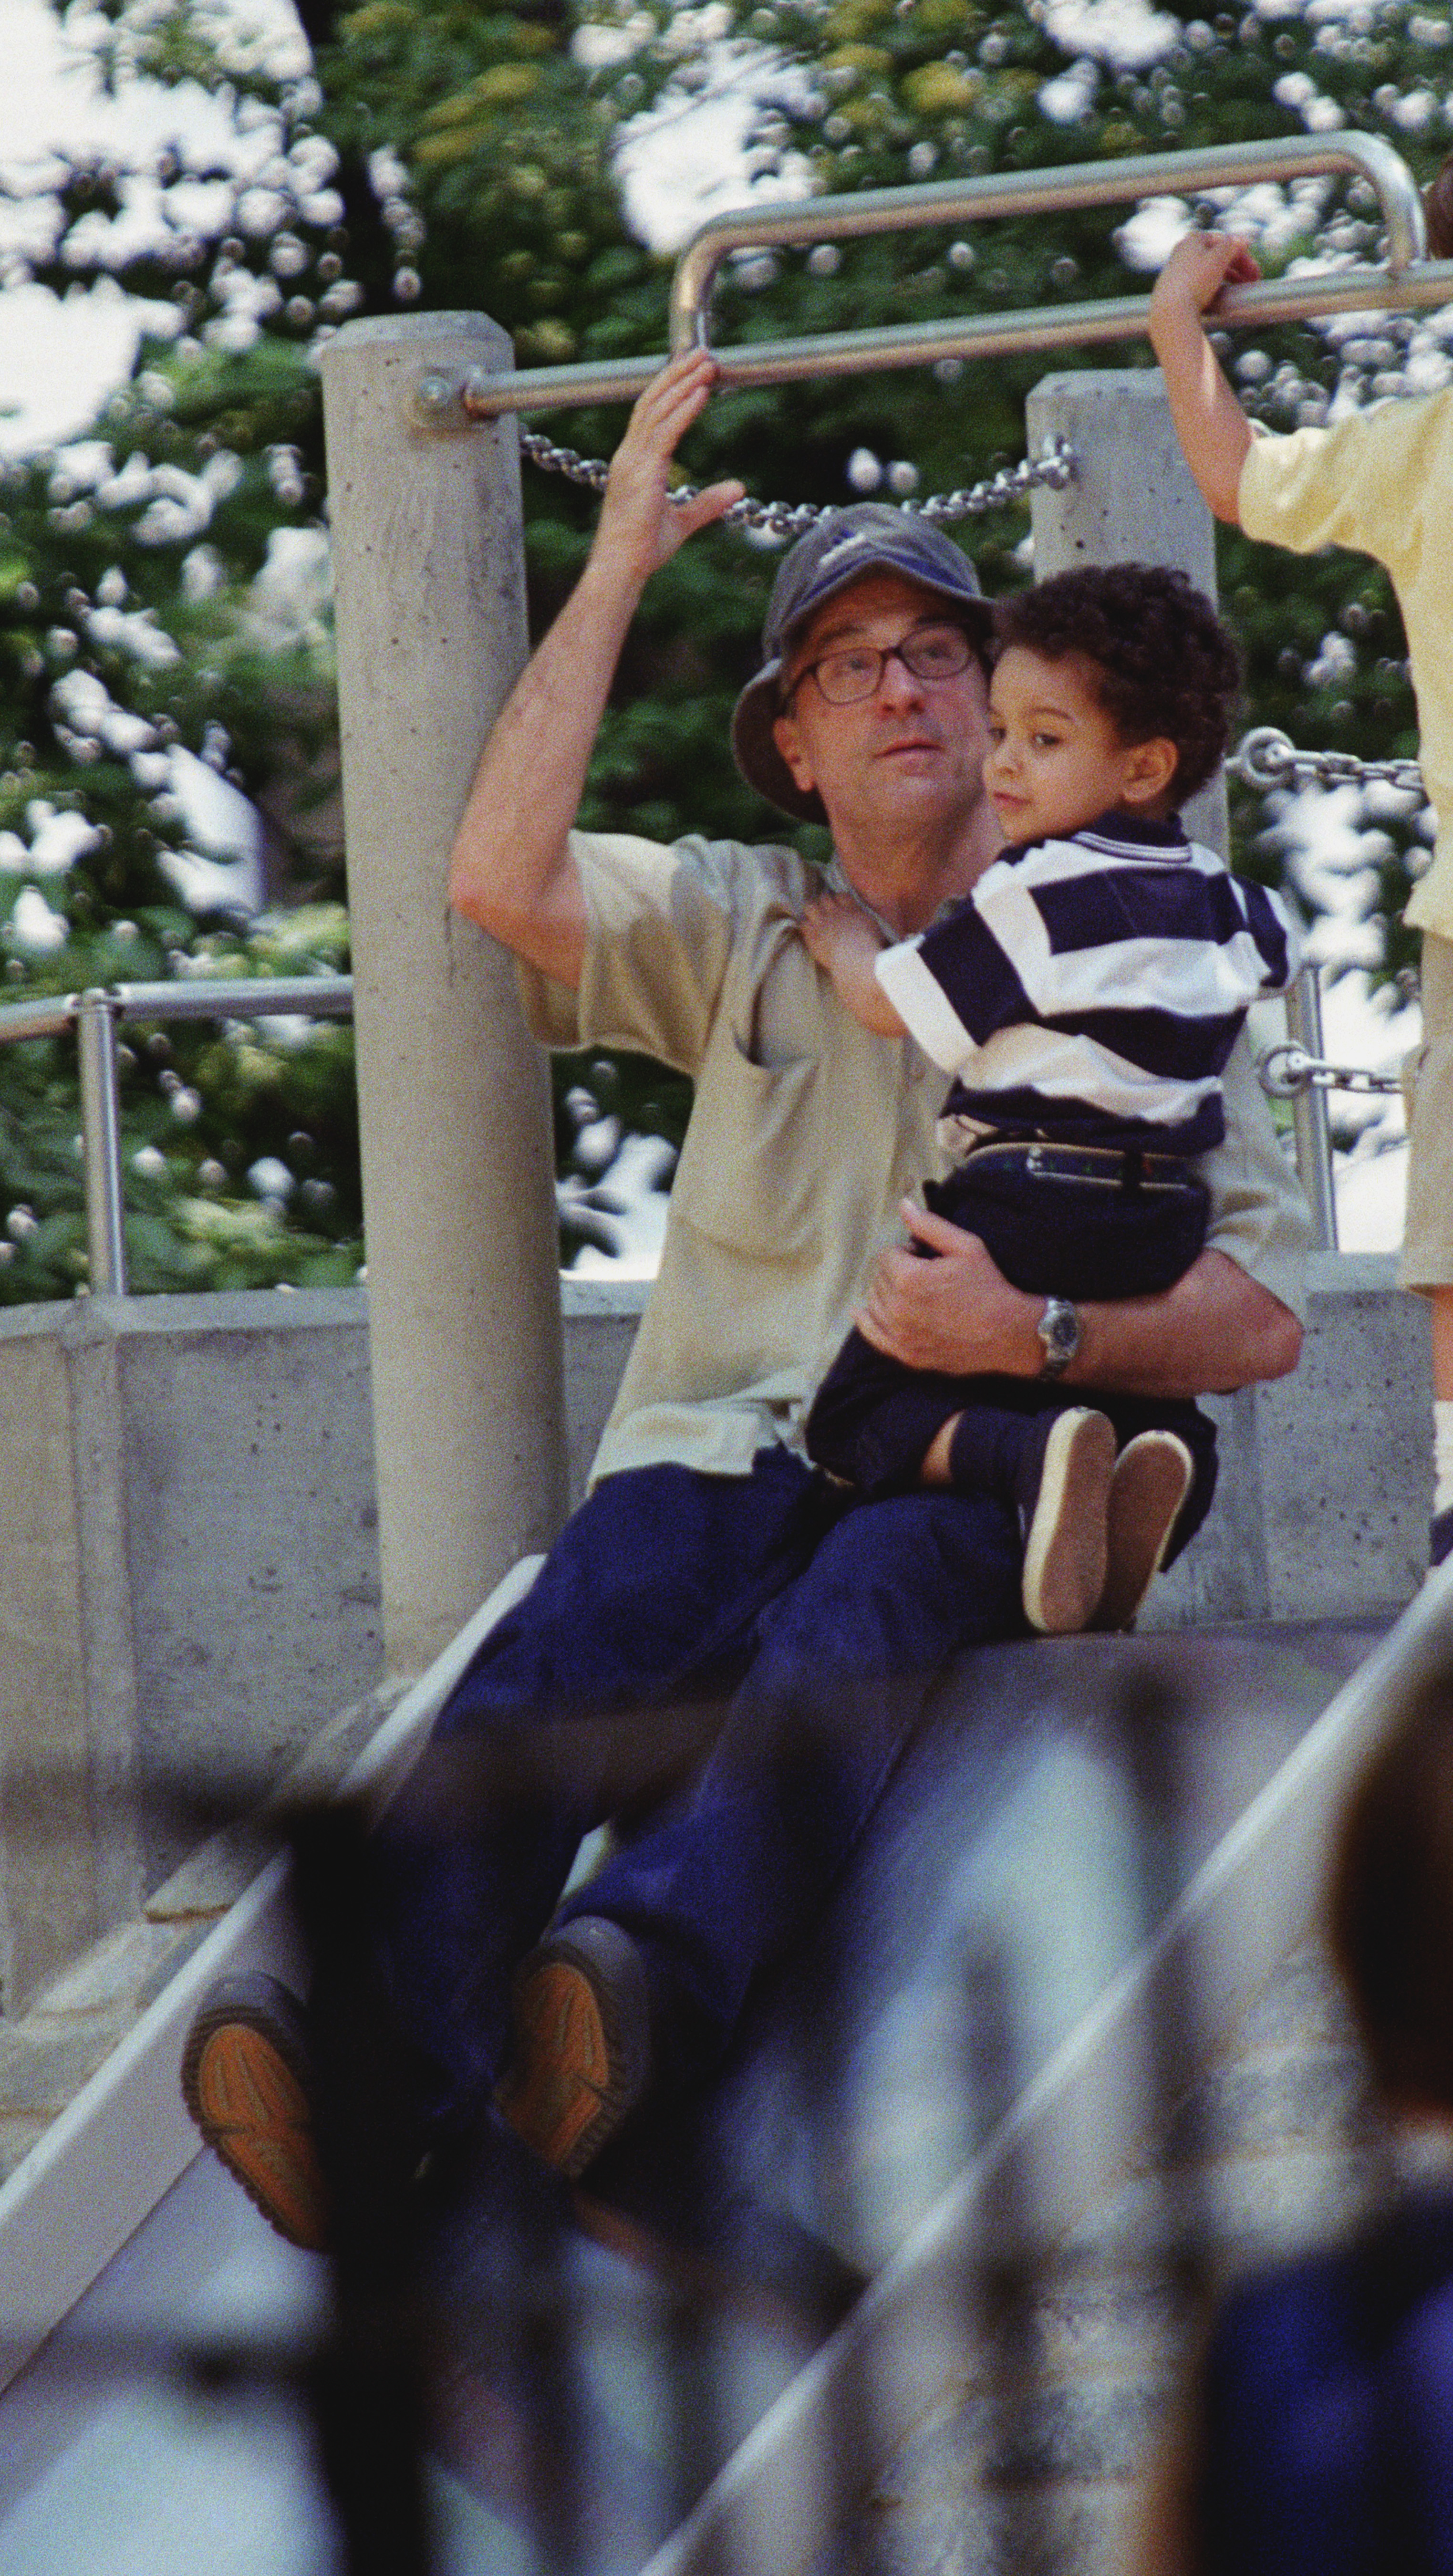 Robert De Niro e hijo, Elliot, en Sliding Pond en Central Park, Nueva York, el 11 de mayo de 2001. | Foto: Getty Images